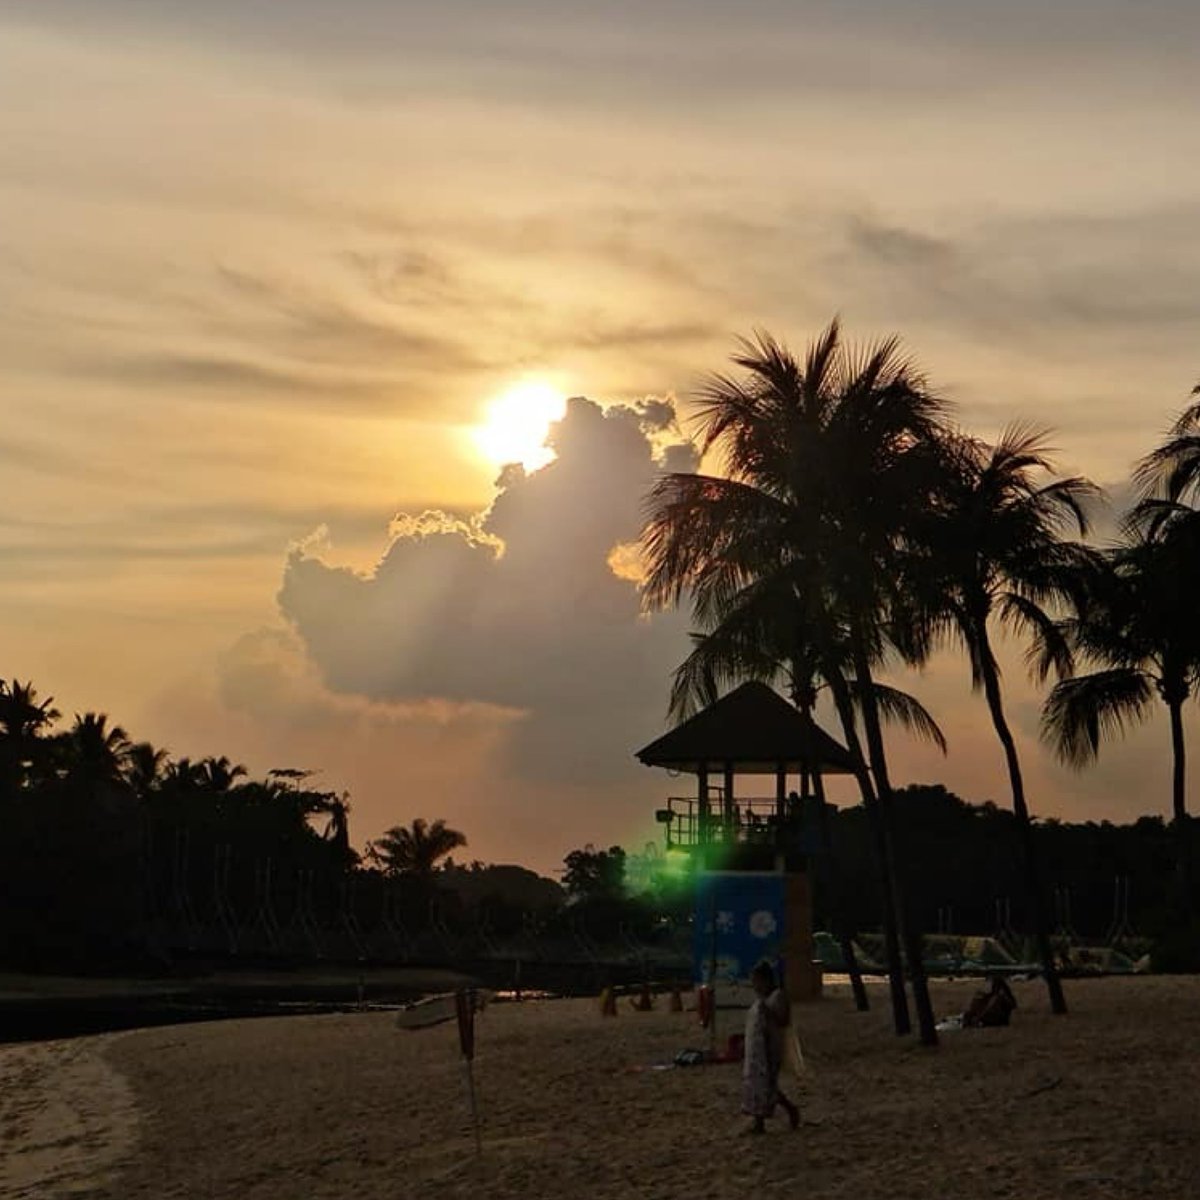 #beach #beachvibes #beachgirl #beachlife #happyplace #photography #photographylovers #clouds #cloudporn #sky #skyphotography #skyporn #sunset #sunsetlover #sunsetphotography